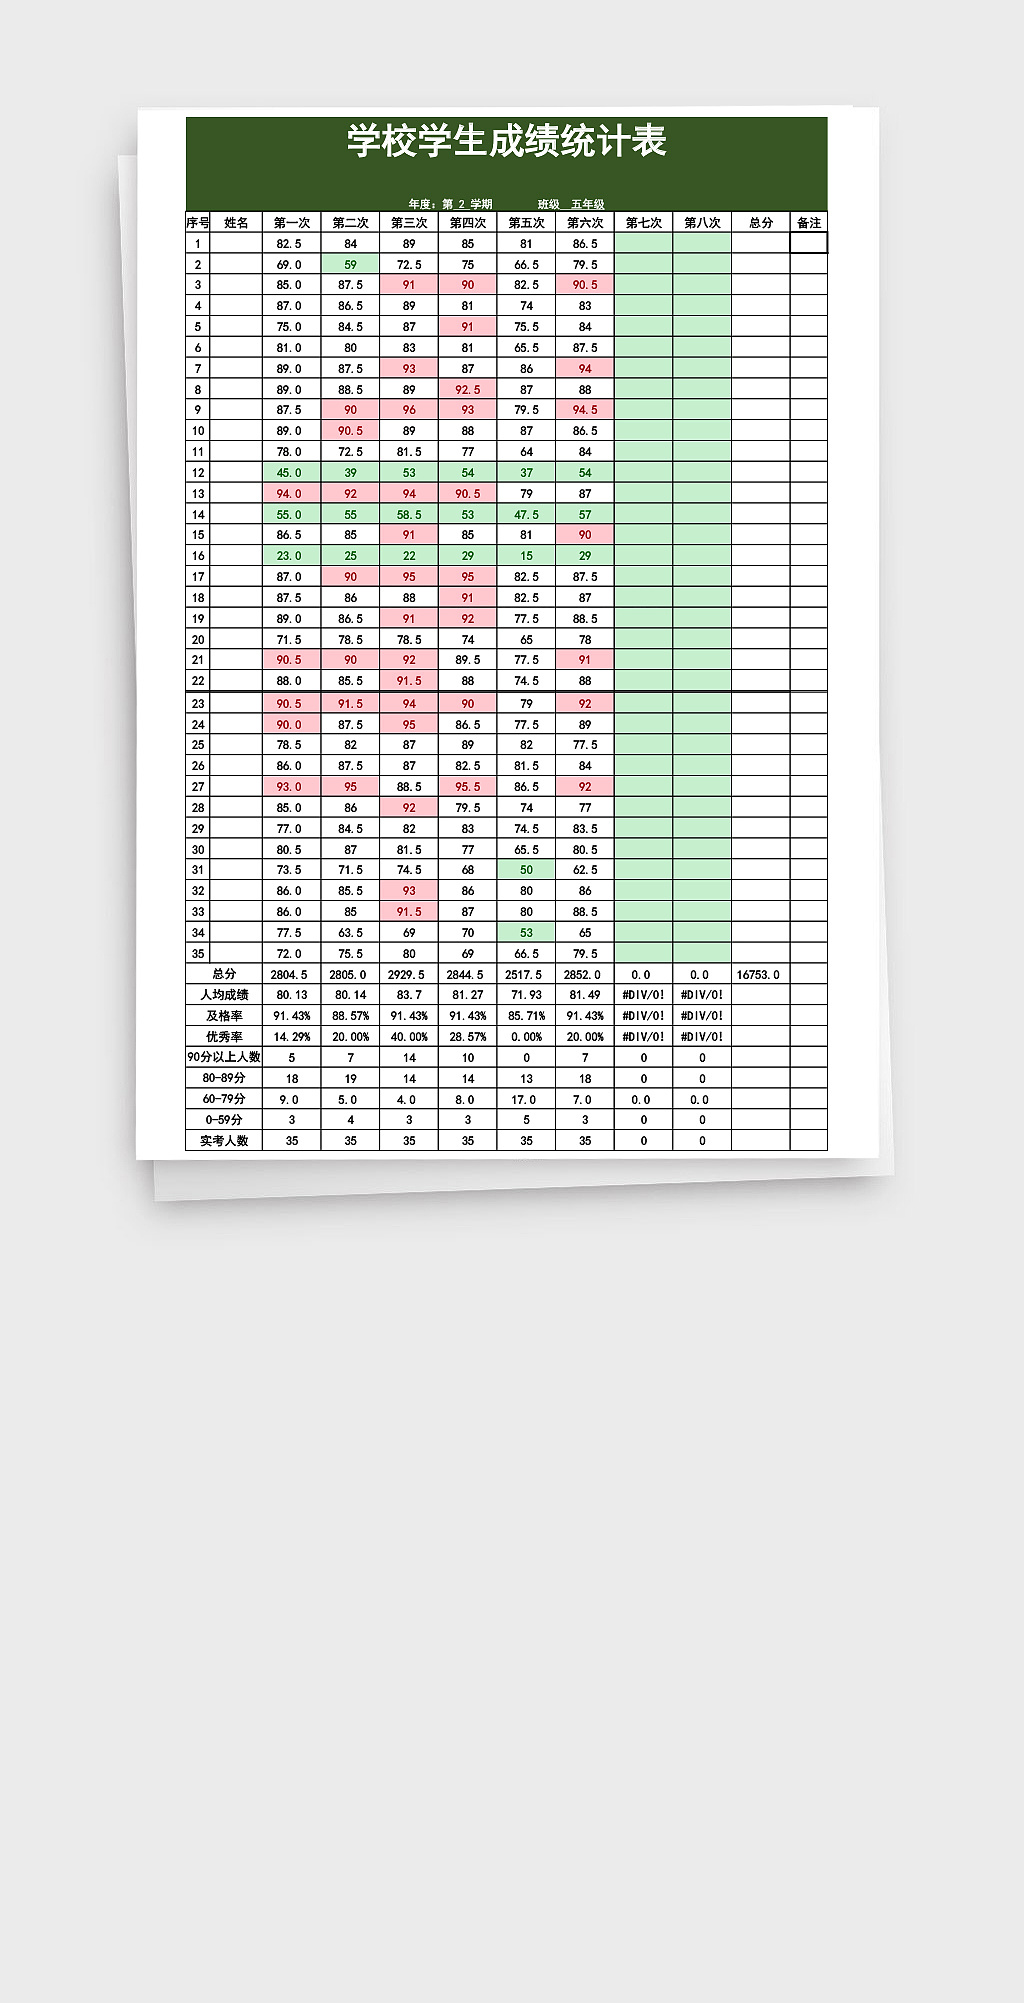 PPT模板-素材下载-图创网清晰简约学生成绩表Excel表格-PPT模板-图创网